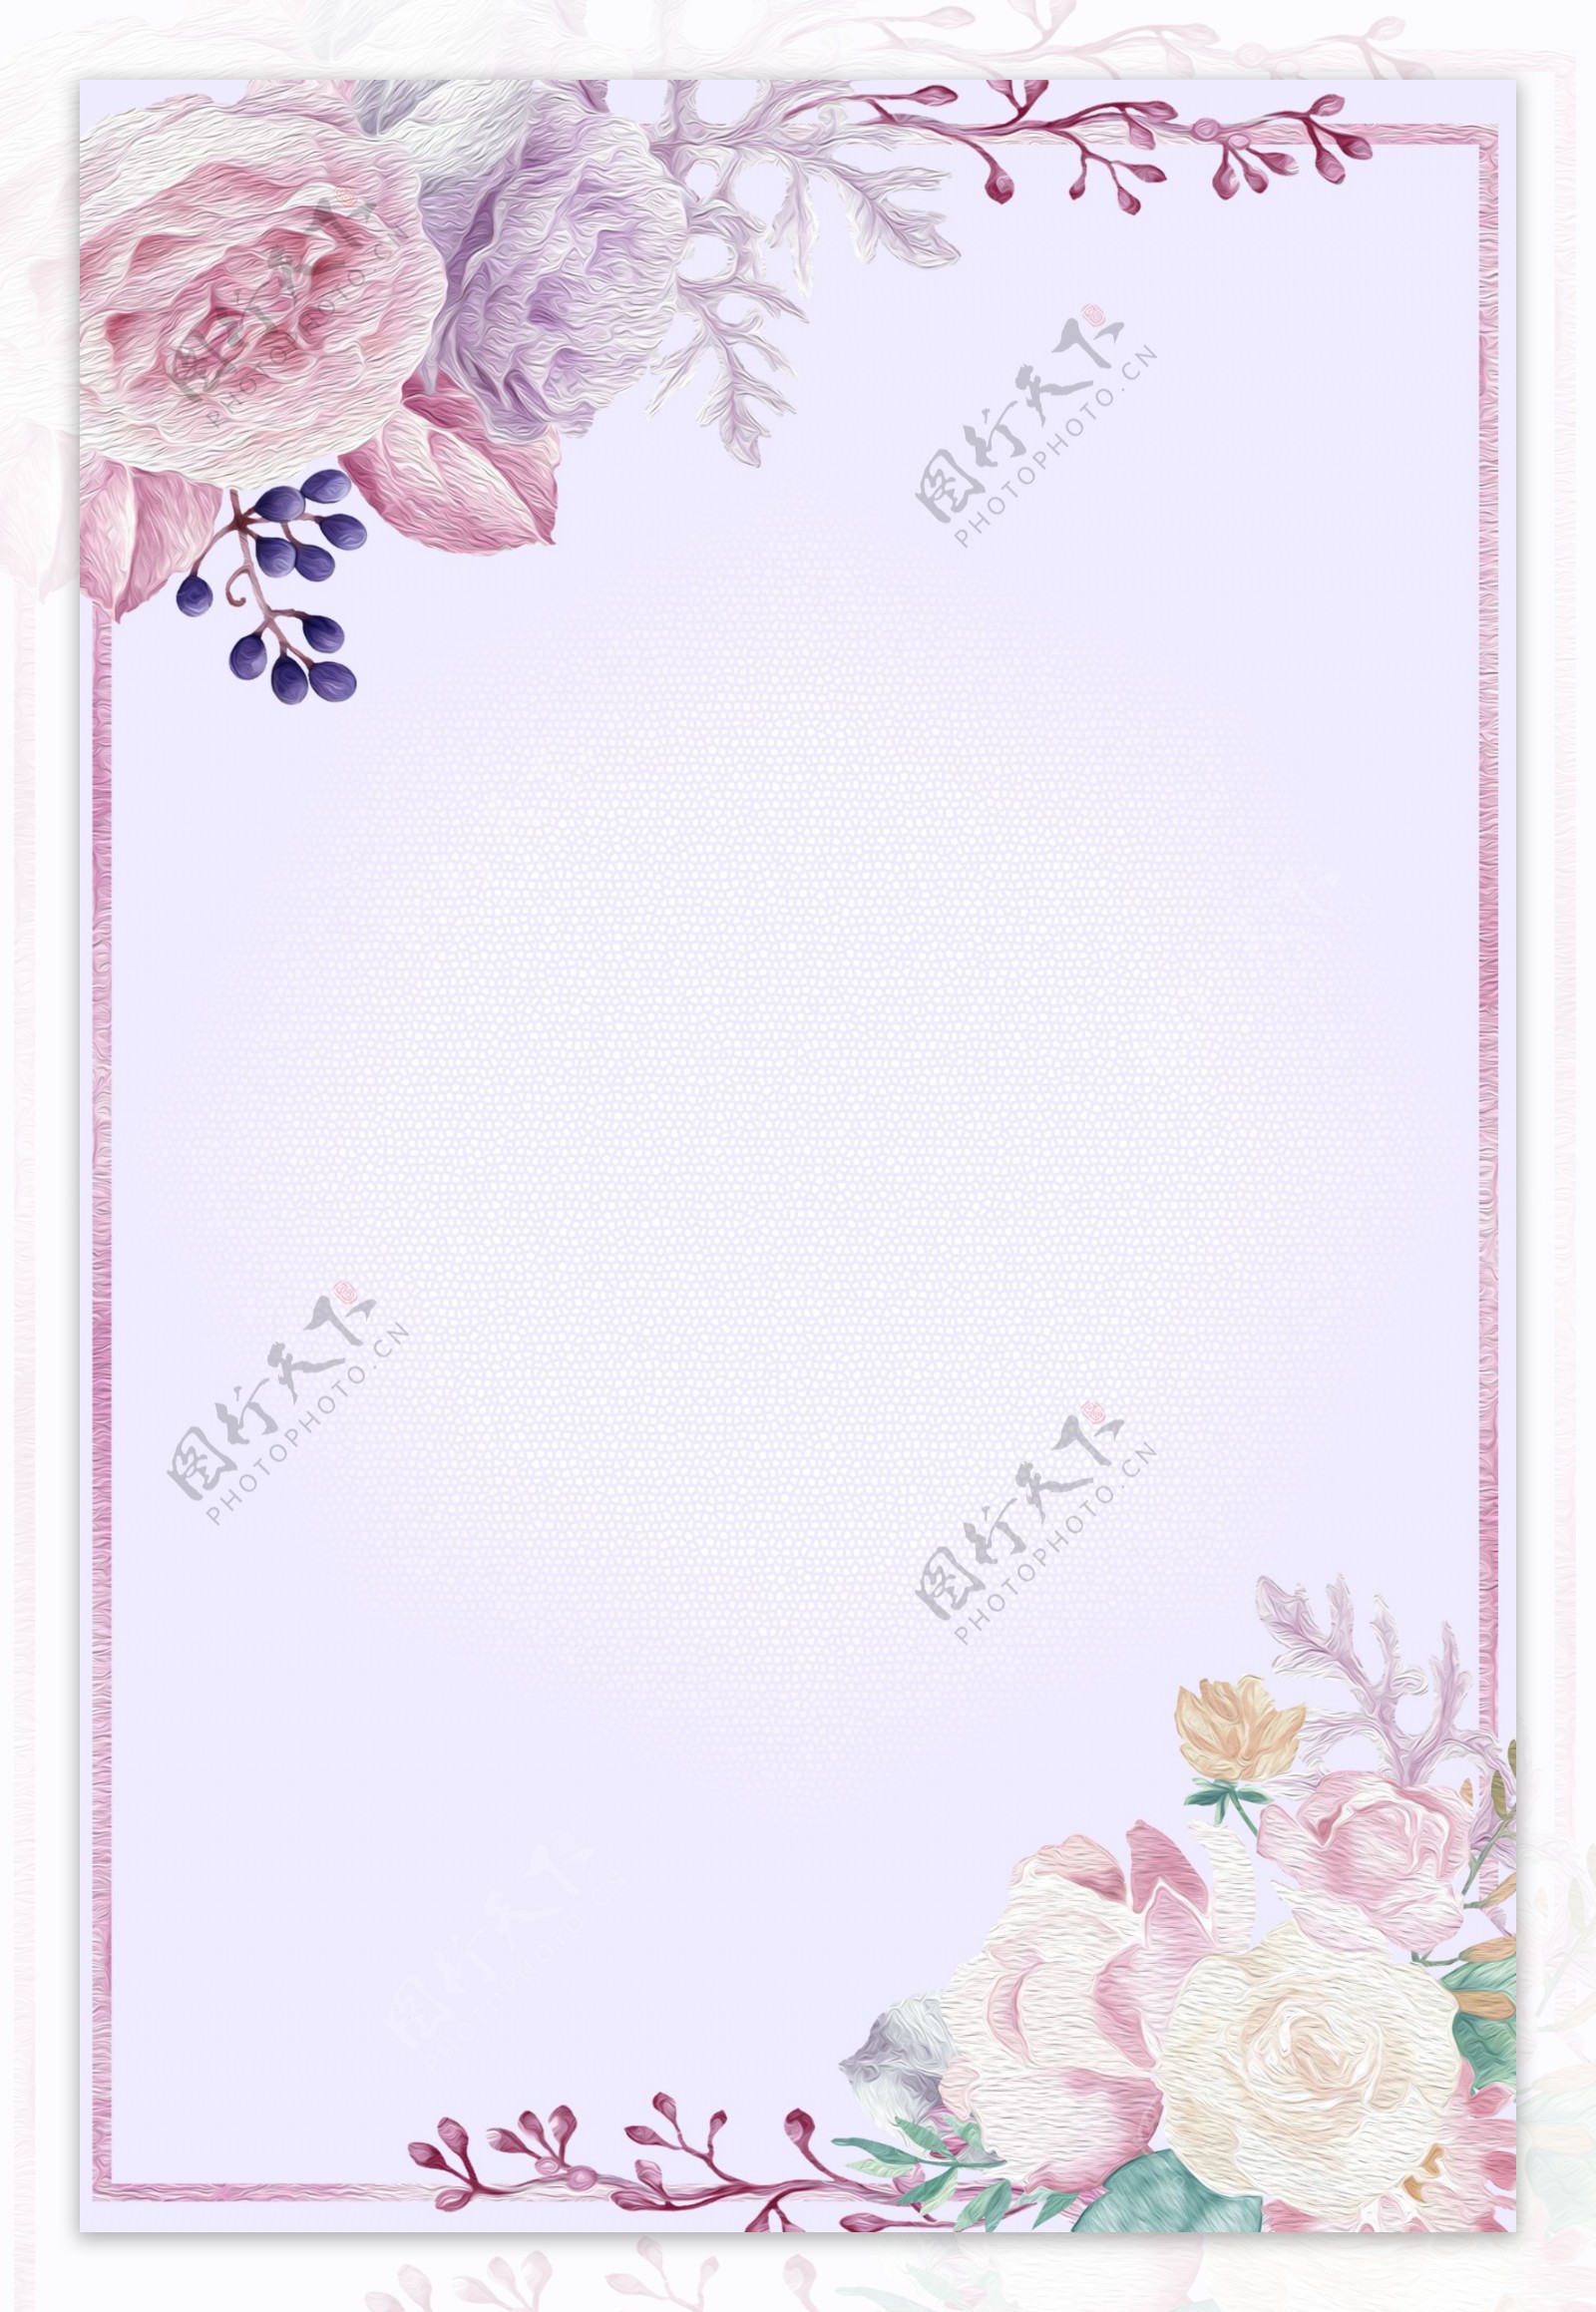 淡紫色油画风花朵边框背景